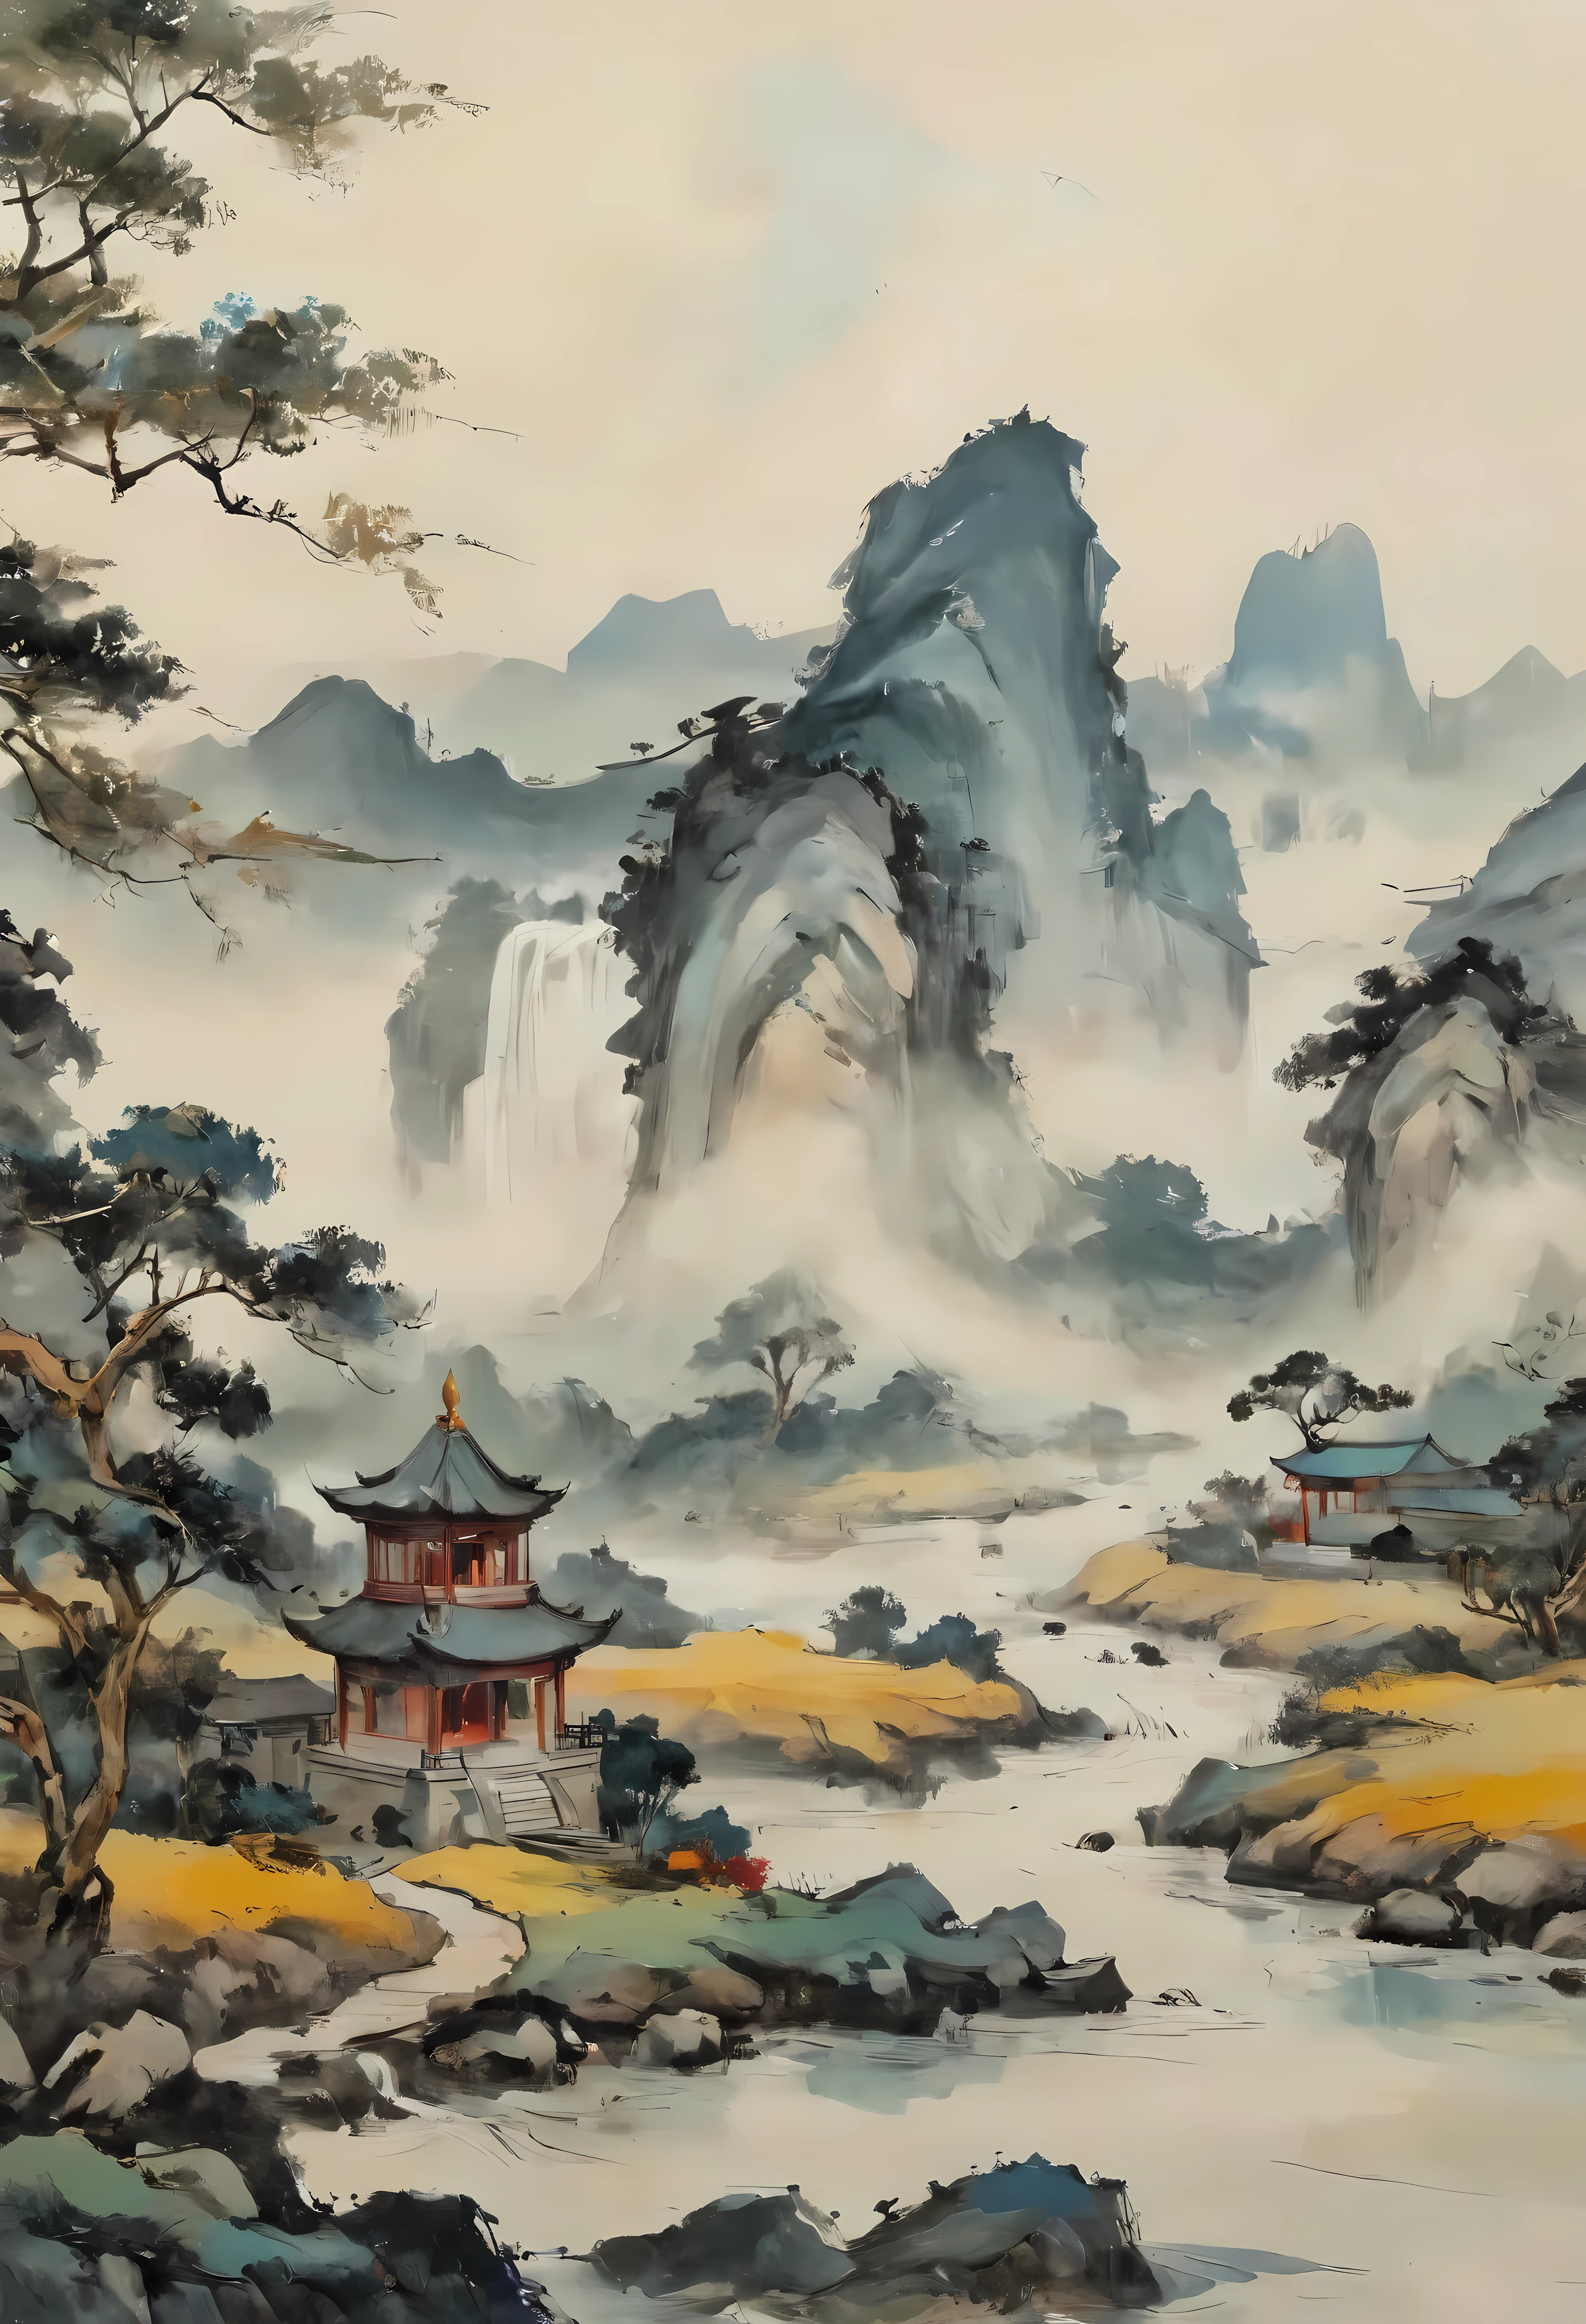 ((Pintura estilo Wu Guanzhong):1.2),((Pintura a tinta chinesa):1.2),((Conceito de pintura ocidental):1.2),((interpretações modernas de temas tradicionais)1.1), ((criando efeitos visuais únicos através de cores e linhas):1.1). | (melhor qualidade,4K,alta resolução,obra de arte:1.2),Ultra-detalhado,(realista,photorealista:1.37),efeito de pintura a óleo, cores vibrantes, pinceladas ousadas, textura rica, detalhes finos, padrões intrincados, composição dinâmica, iluminação atmosférica, atmosfera surreal, ambiente sereno, ambiente tranquilo, atenção meticulosa aos detalhes, uso magistral do espaço, cenário hipnotizante, estilo distinto, interpretação poética, emoções evocativas, fusão de tradição e modernidade, mistura harmoniosa de Oriente e Ocidente, delicado equilíbrio entre abstração e representação, celebração da beleza da natureza, um oásis de serenidade, elegância atemporal, móveis luxuosos, vistas panorâmicas de tirar o fôlego, paleta de cores harmoniosa, iluminação natural suave, gradientes de cores suaves, profundidade e dimensão, profundidade de campo imersiva.